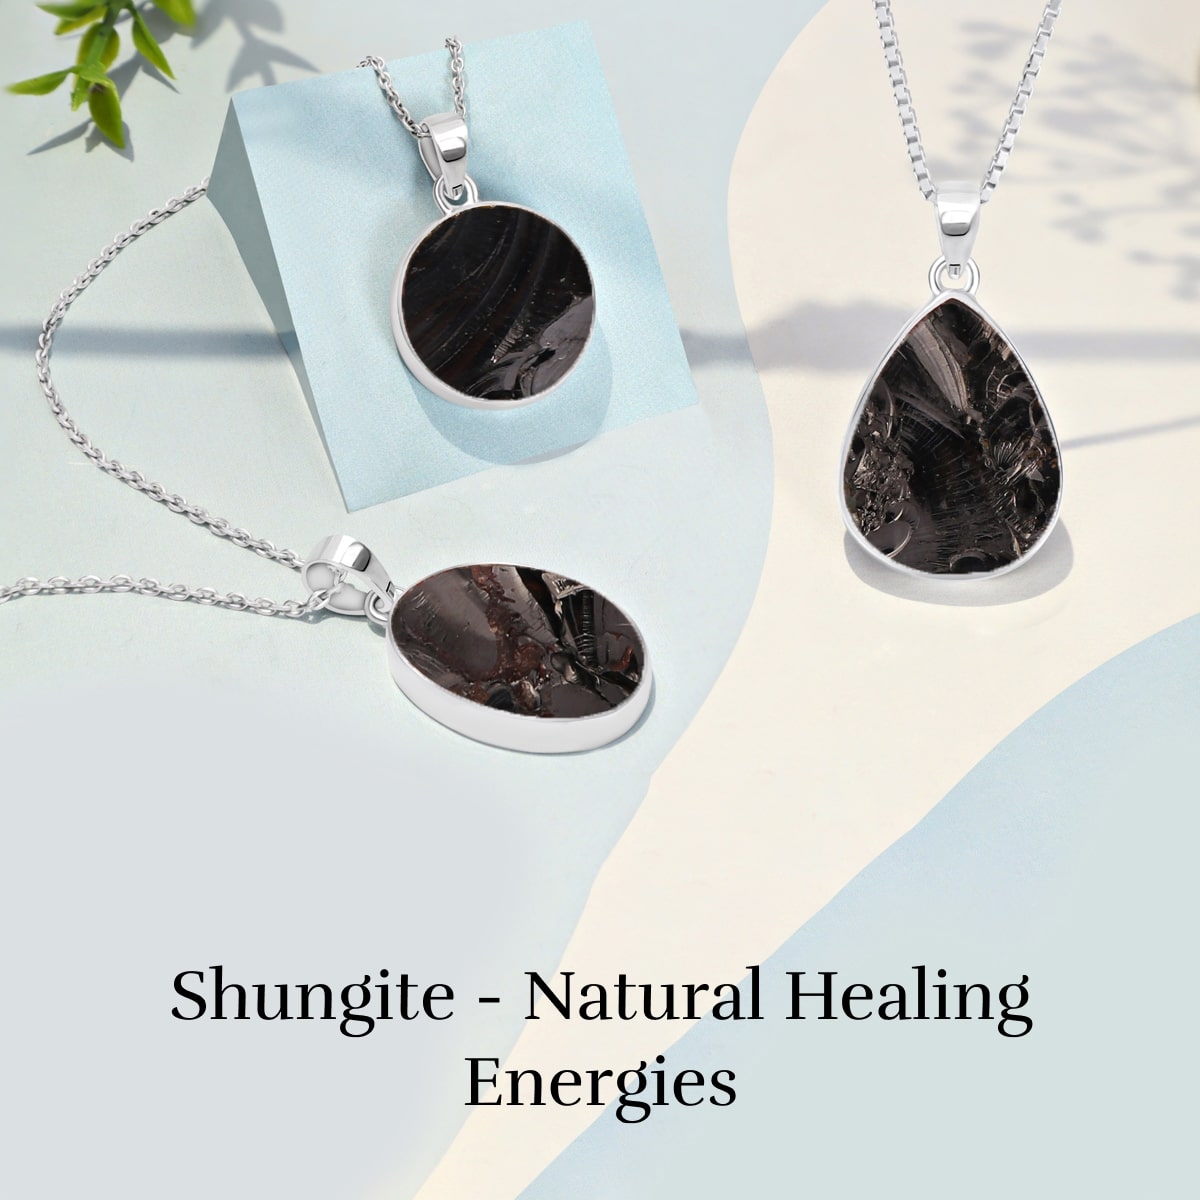 Shungite Healing properties